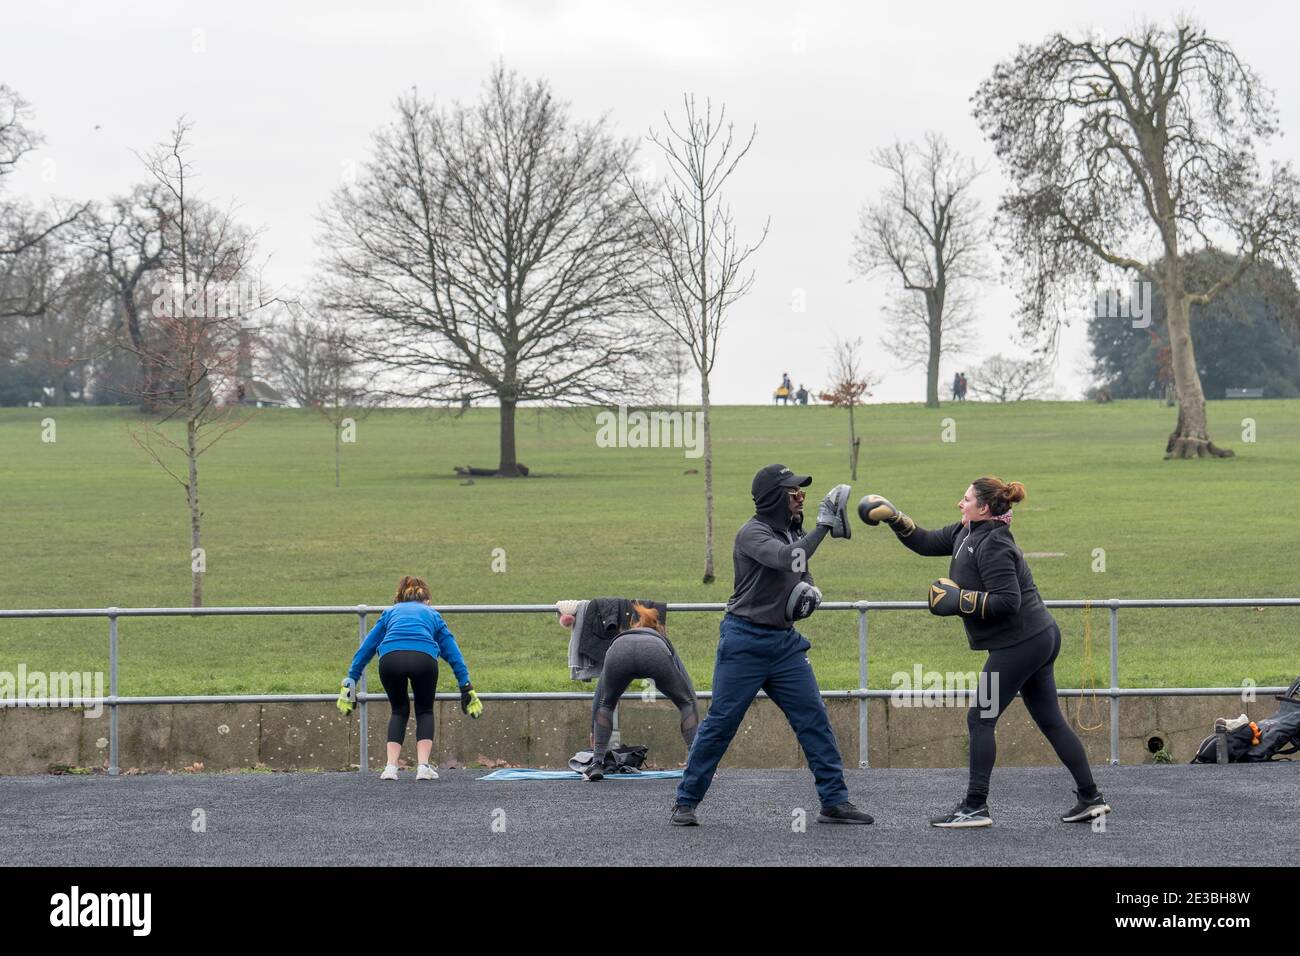 Un homme et une femme qui suivent un entraînement de boxe et une femme restent en forme à Brockwell Park le 15 janvier 2021 dans le sud de Londres, en Angleterre. Photo de Sam Mellish Banque D'Images